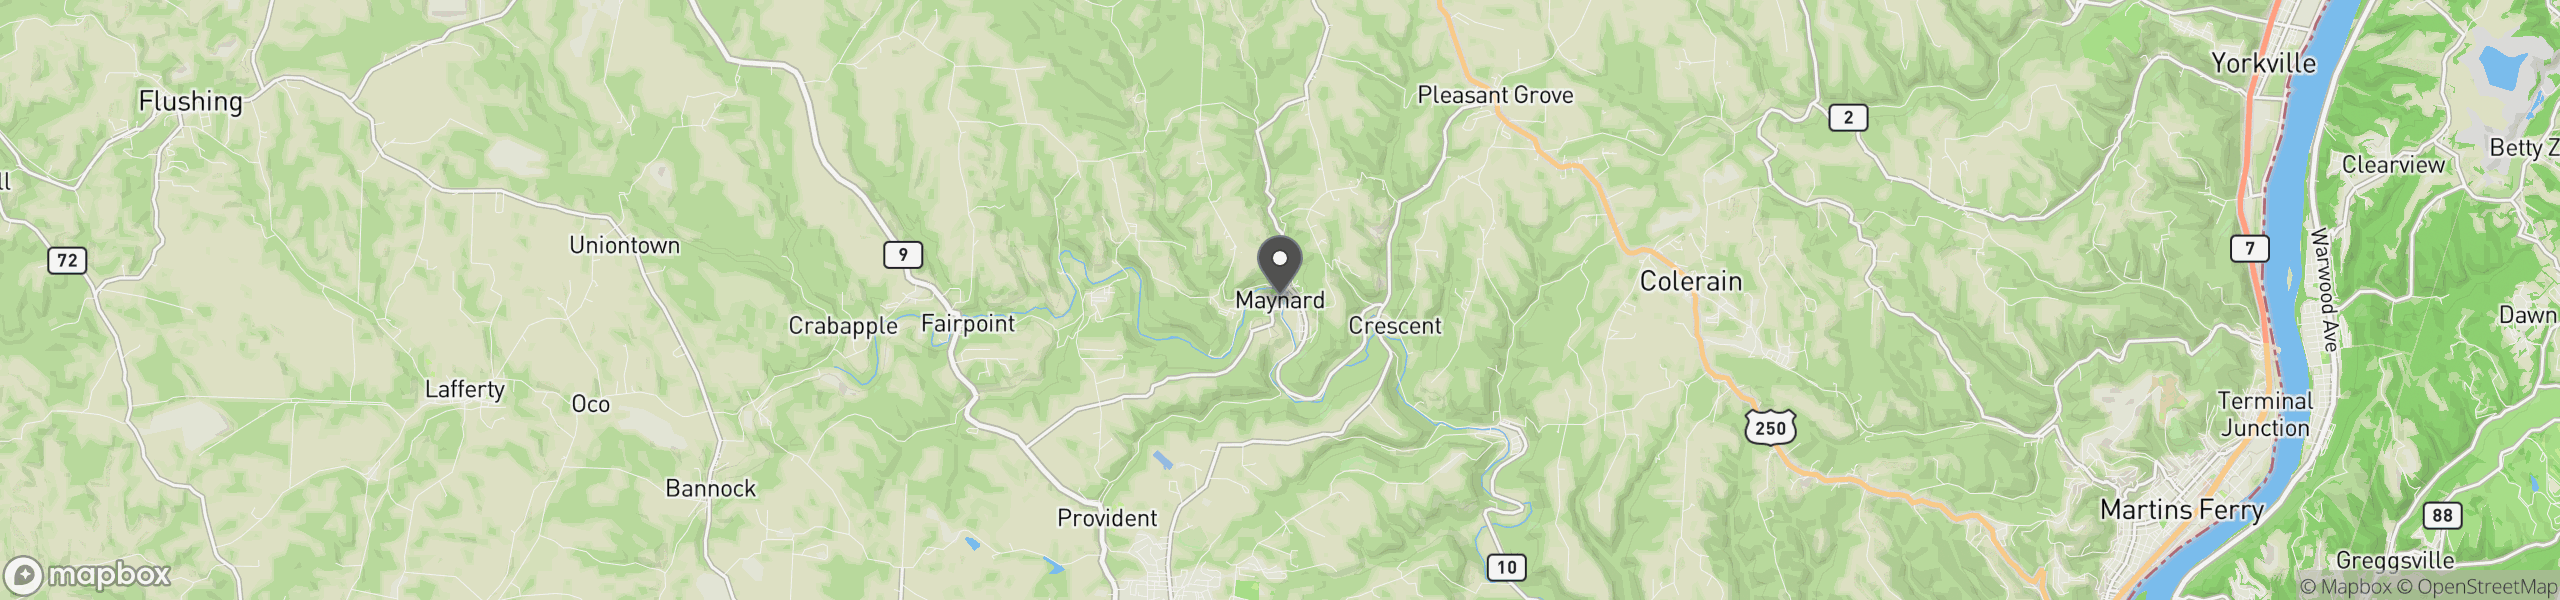 Maynard, OH 43937